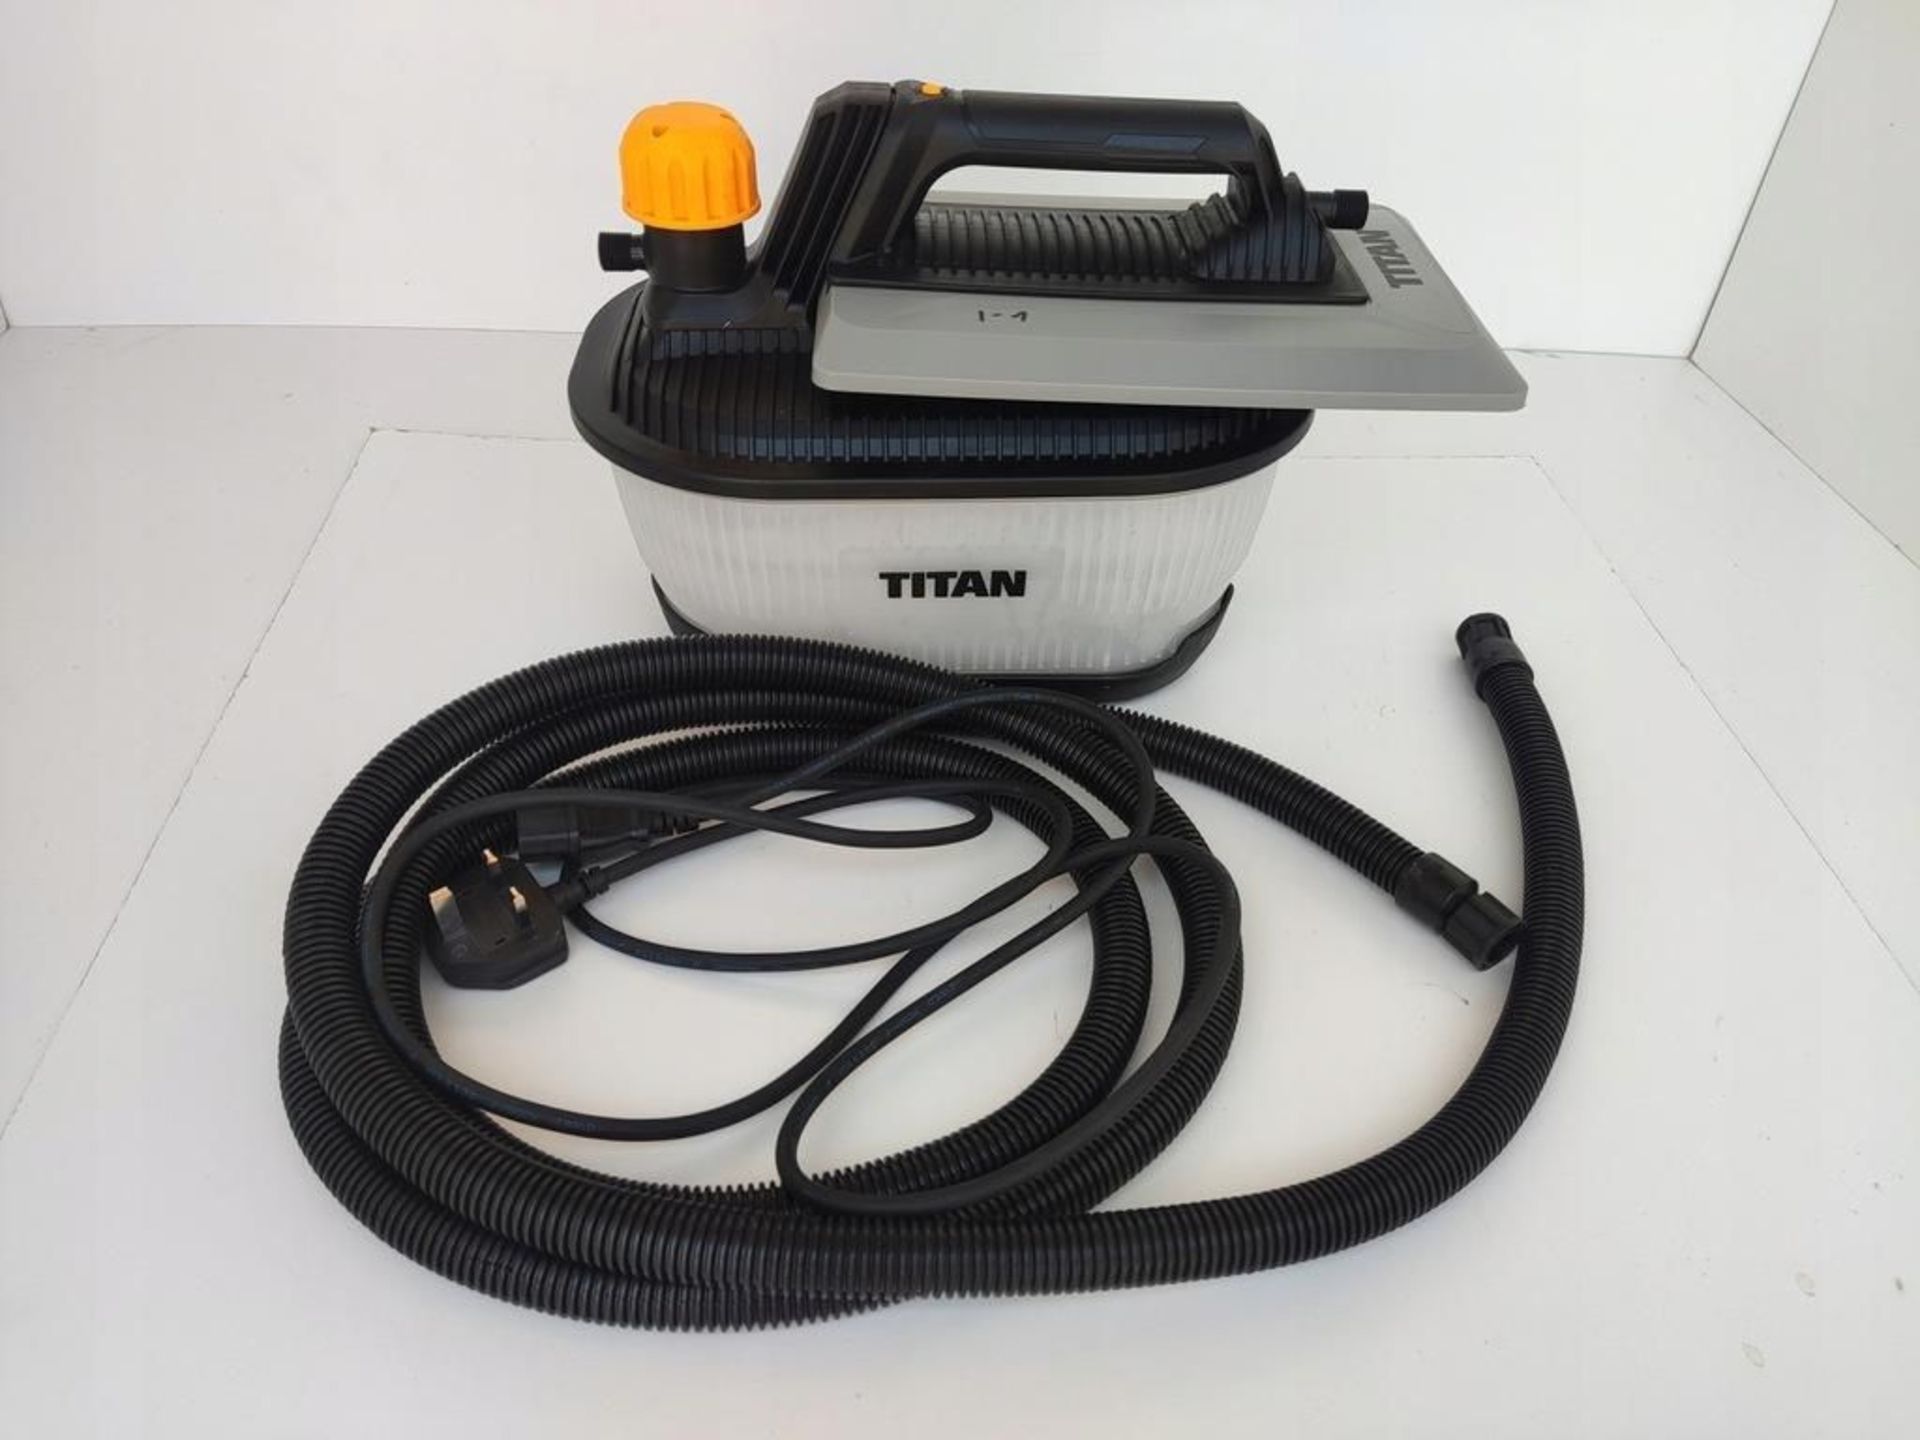 2 x Titan 2000W Steam Wallpaper Stripper TTB772STM 4Ltr Capacity 240V - R14.14. - Image 2 of 2